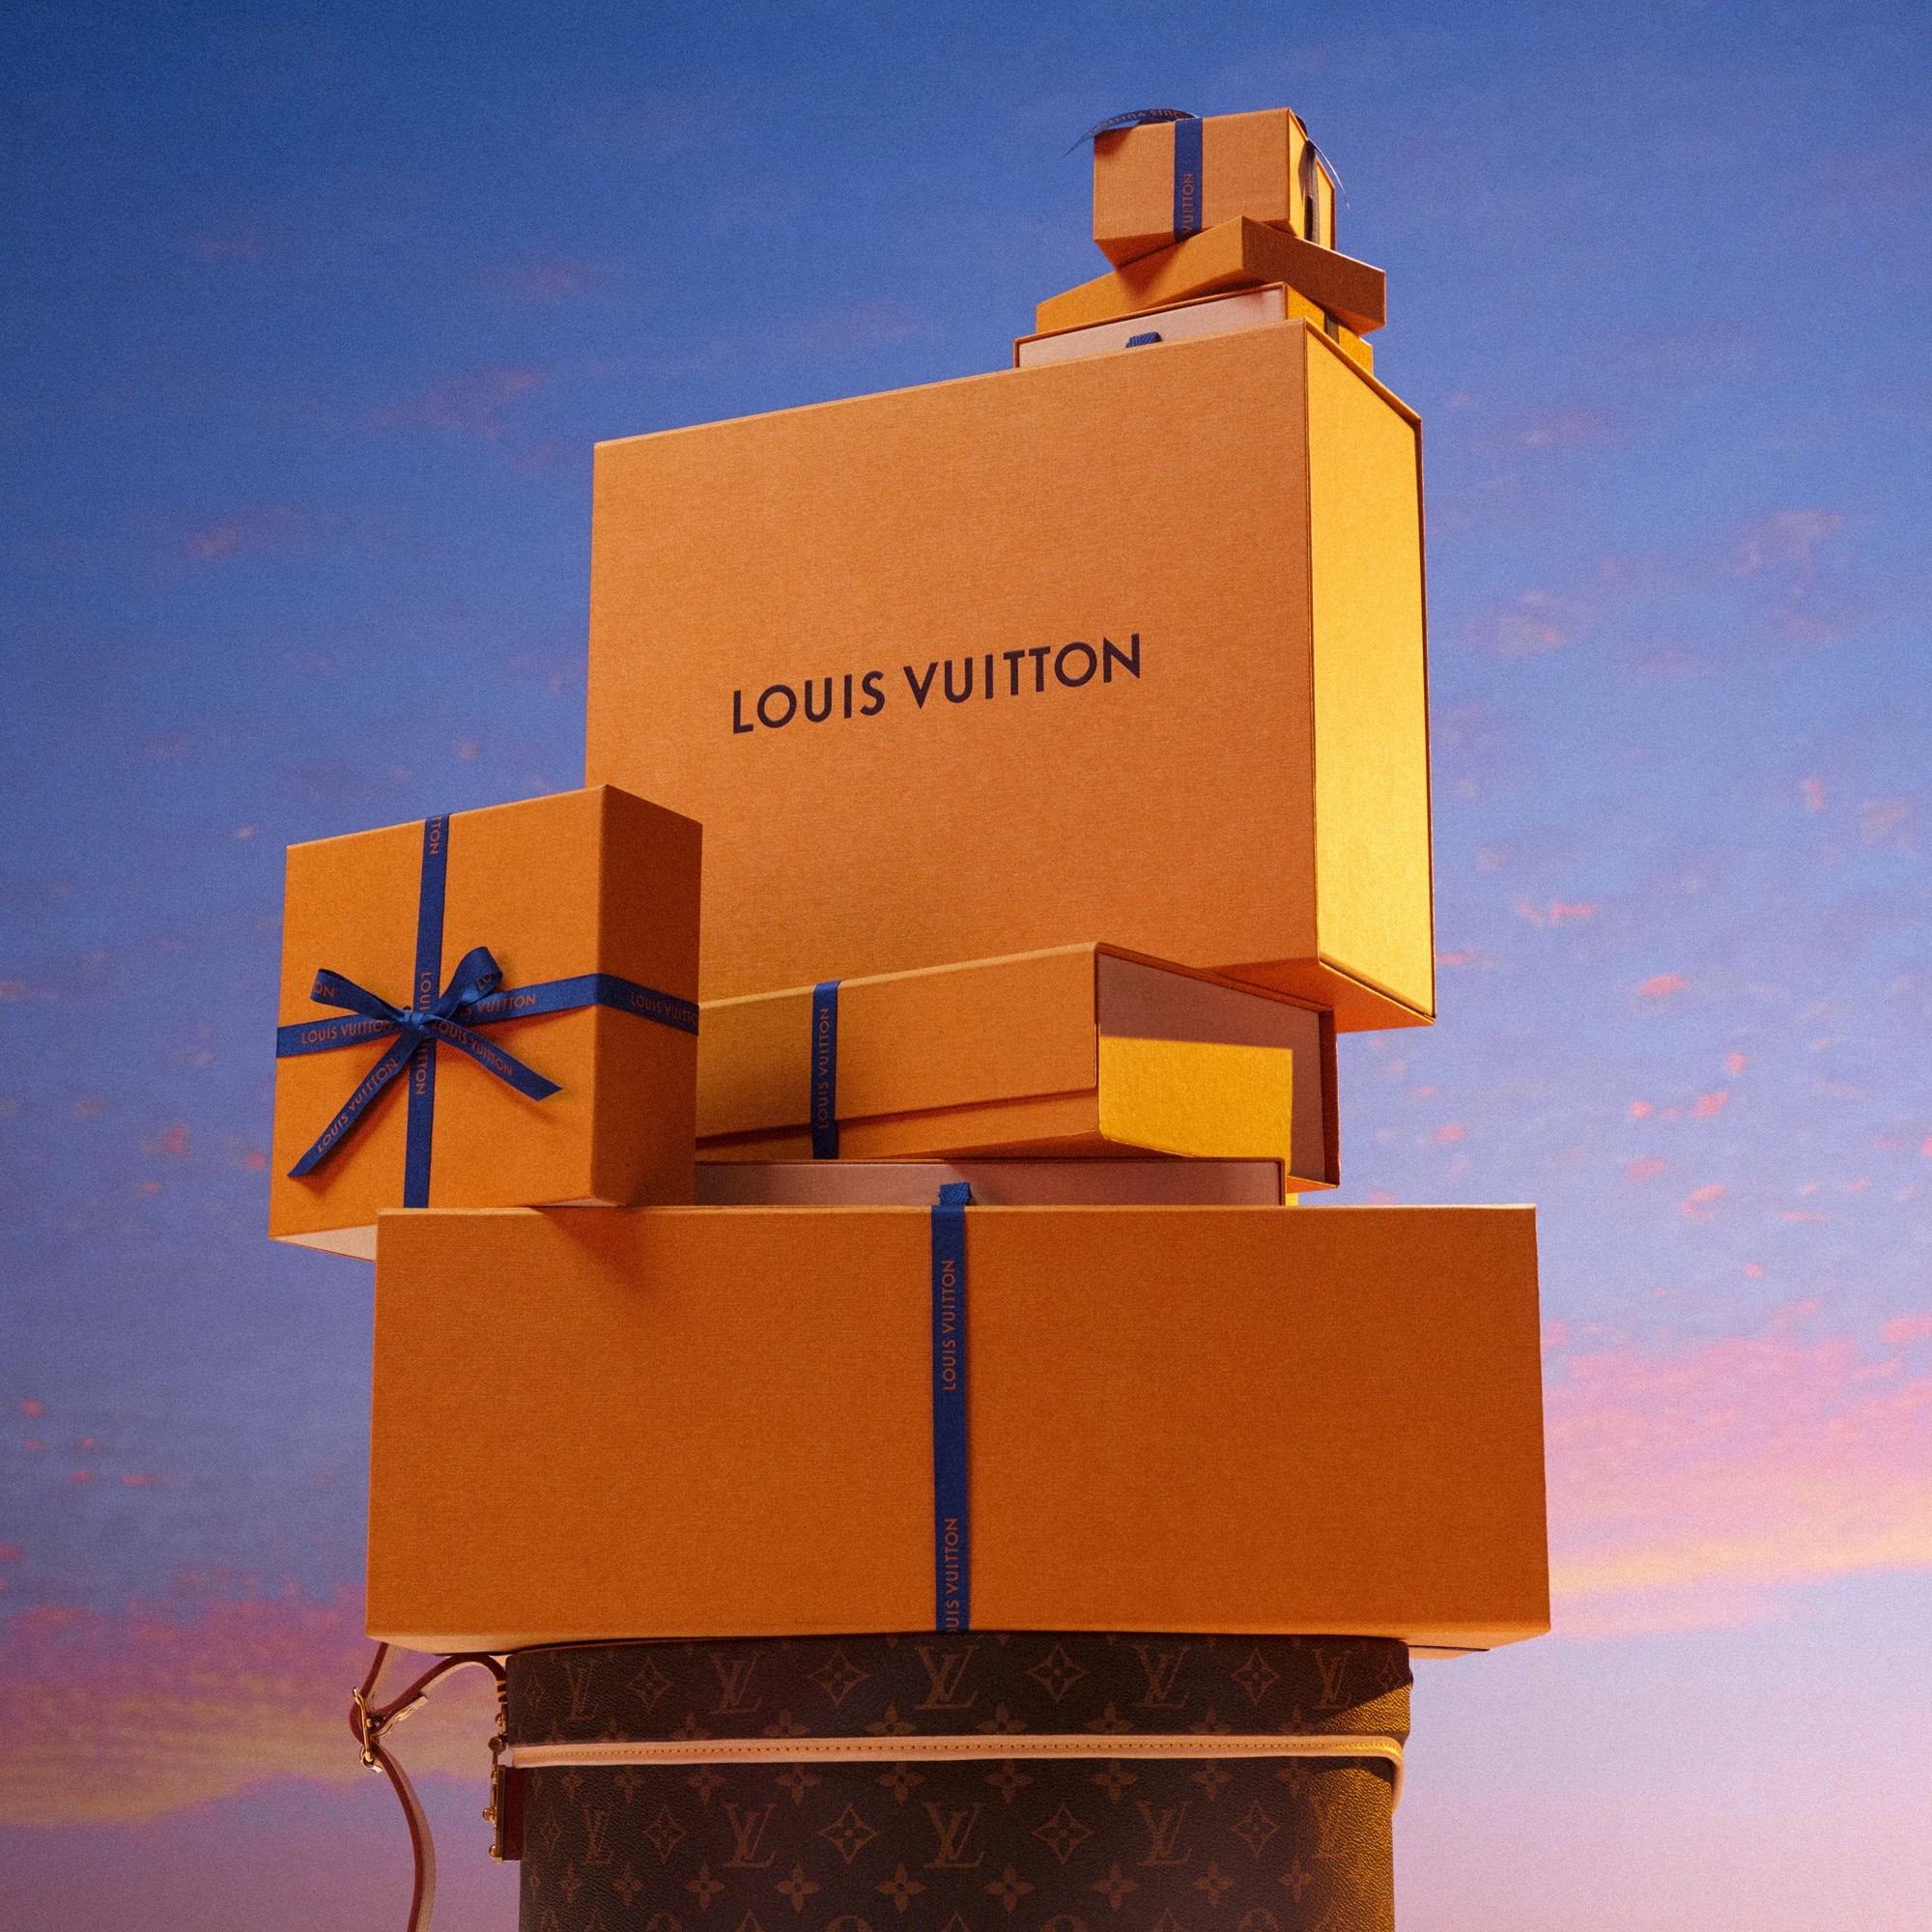 Louis Vuitton Brand Value & Company Profile